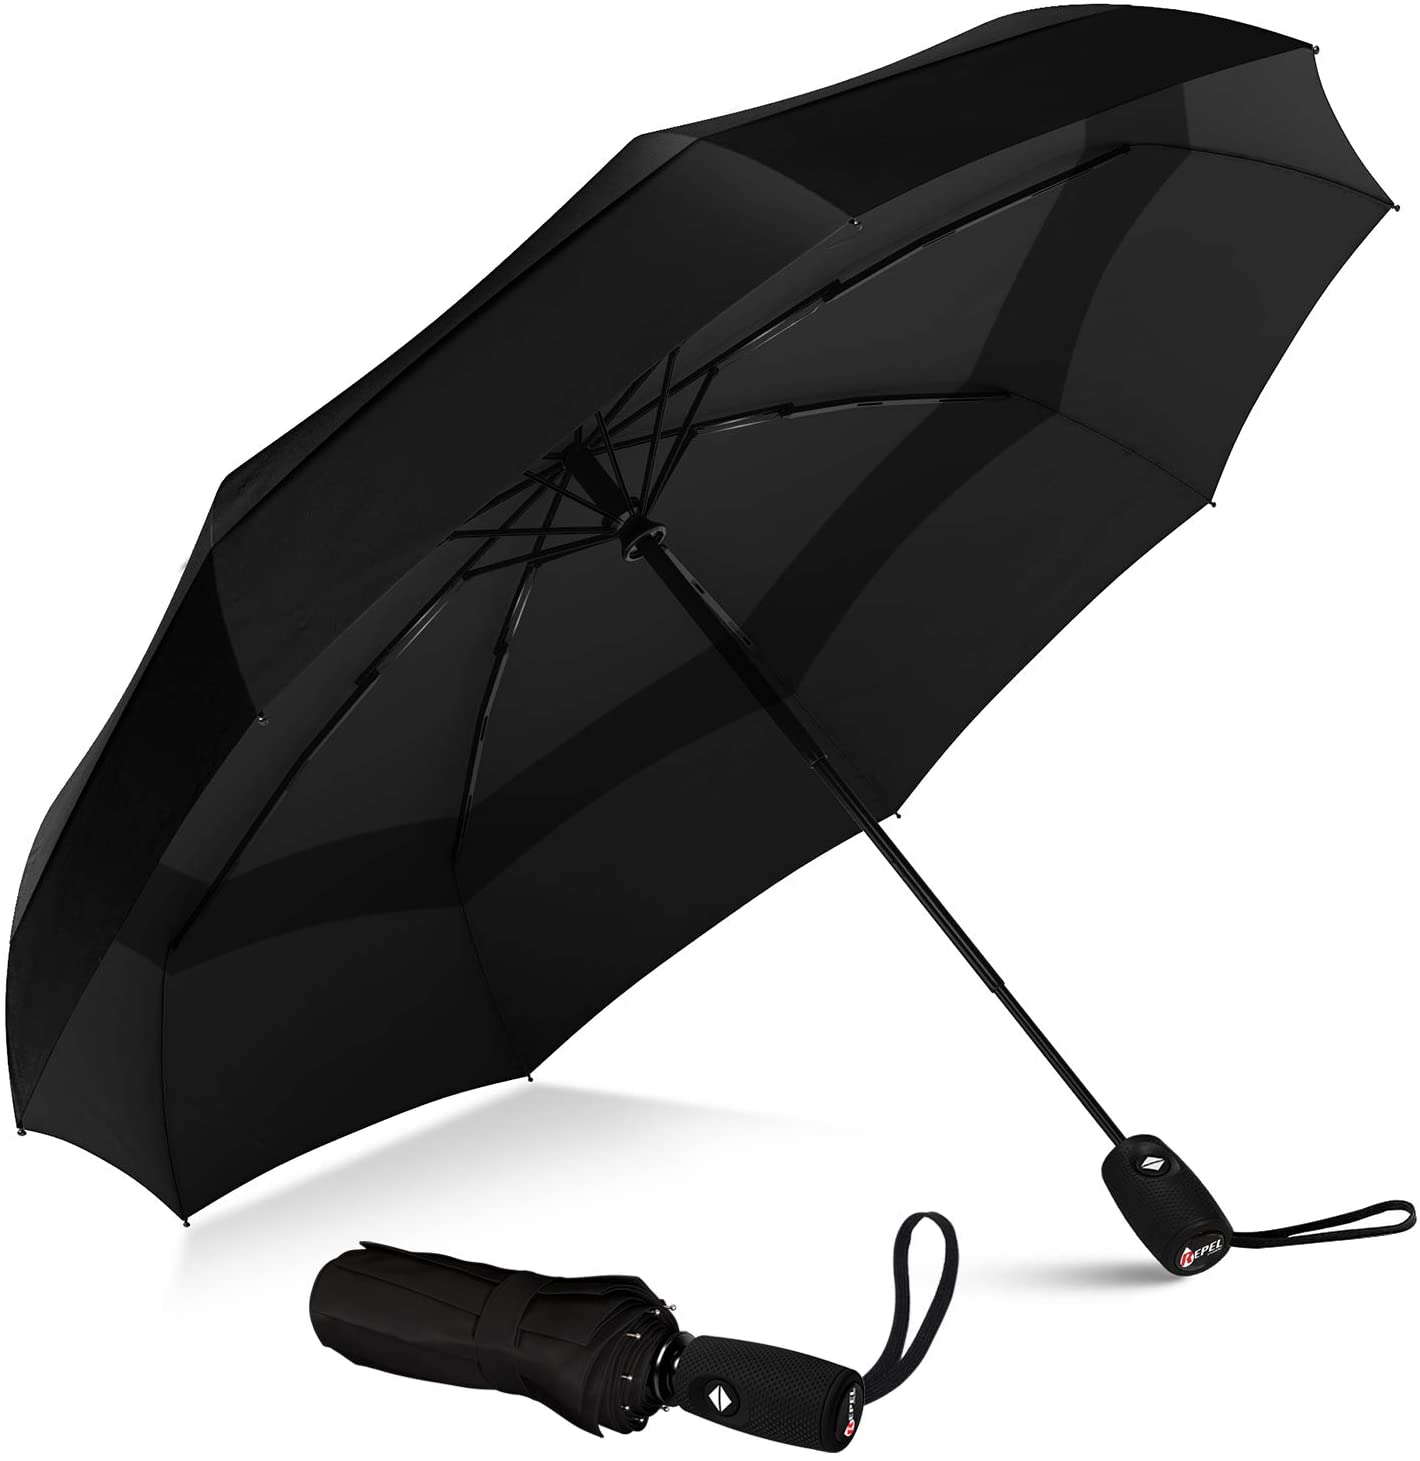 Repel Umbrella Teflon Double Vented Windproof Travel Umbrella